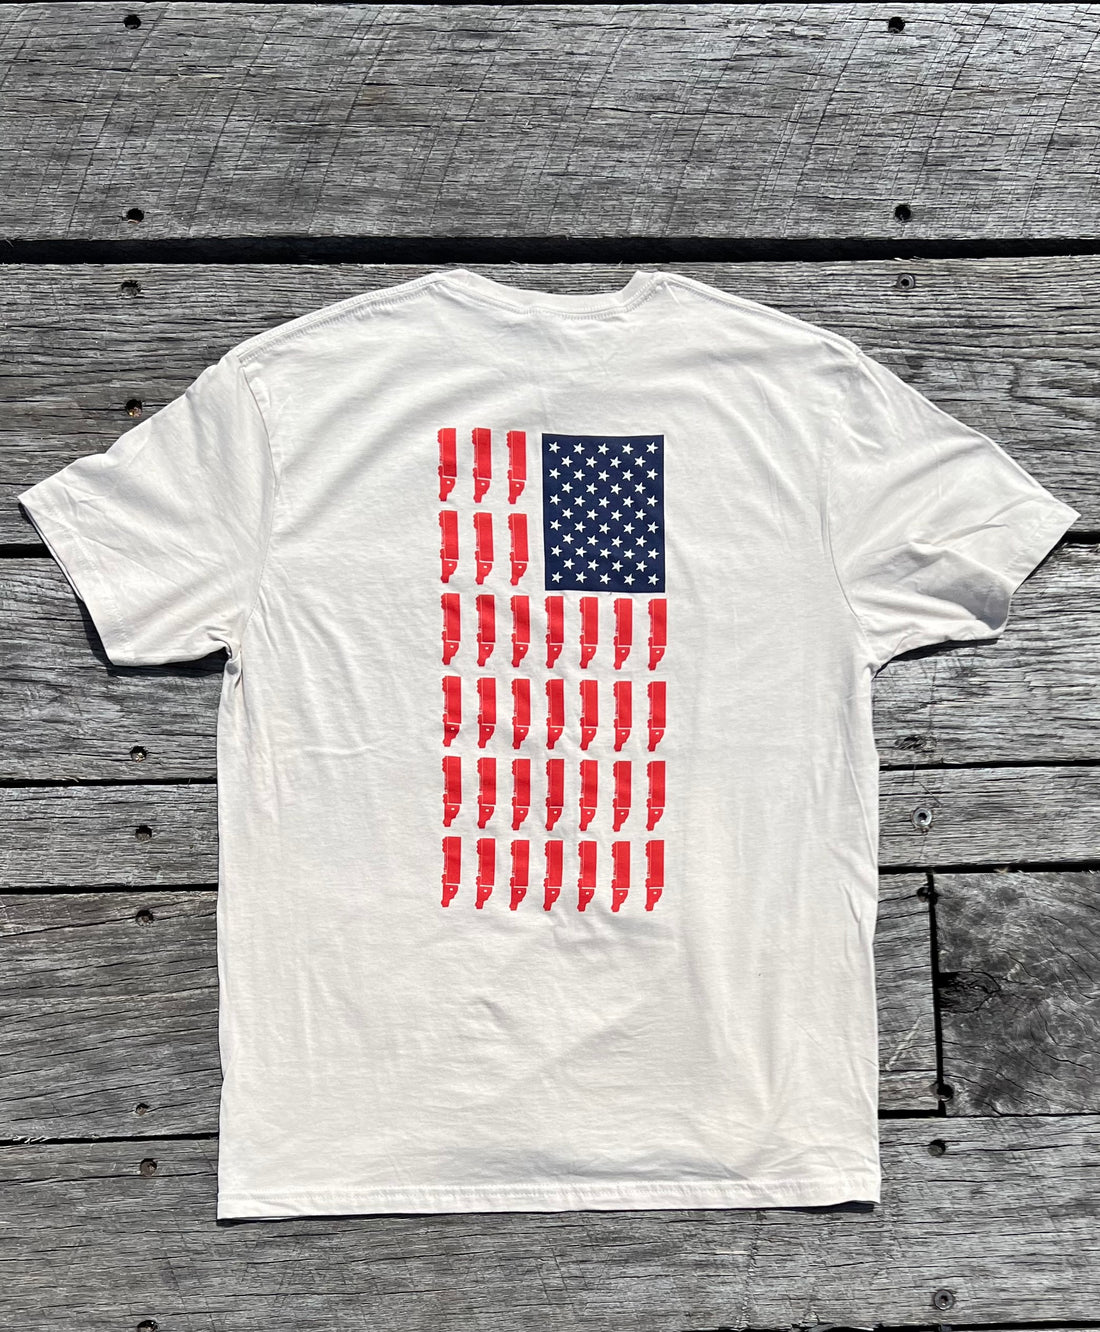 BreakerOne9 - USA Trucker Flag T-shirt - Sand